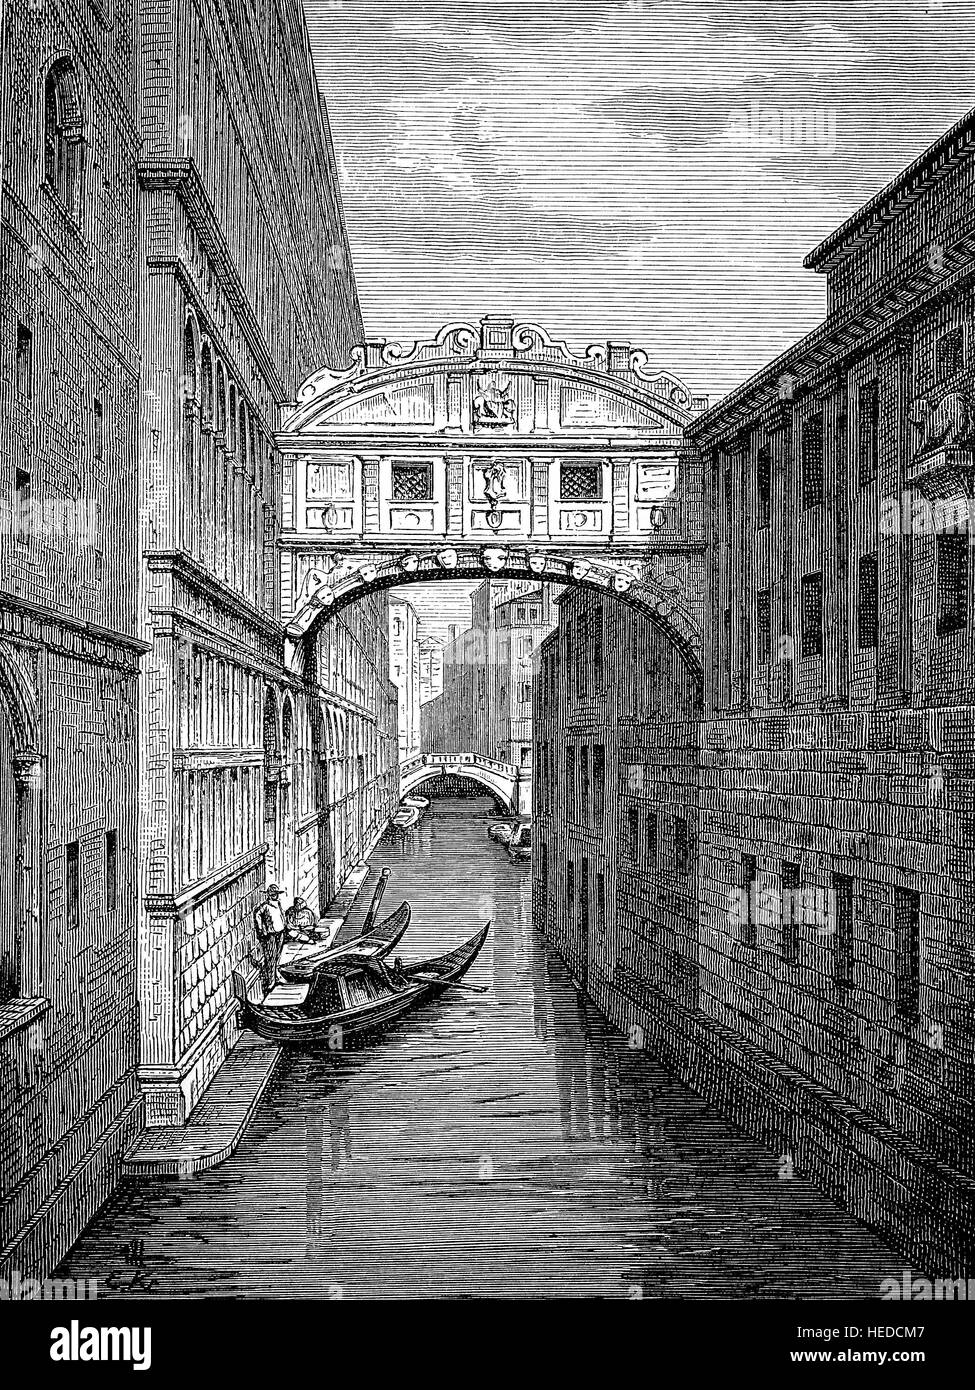 El Puente de los Suspiros o el Ponte dei Sospiri, es un puente situado en Venecia, en el norte de Italia, a partir de una xilografía de 1880, digital mejorado Foto de stock